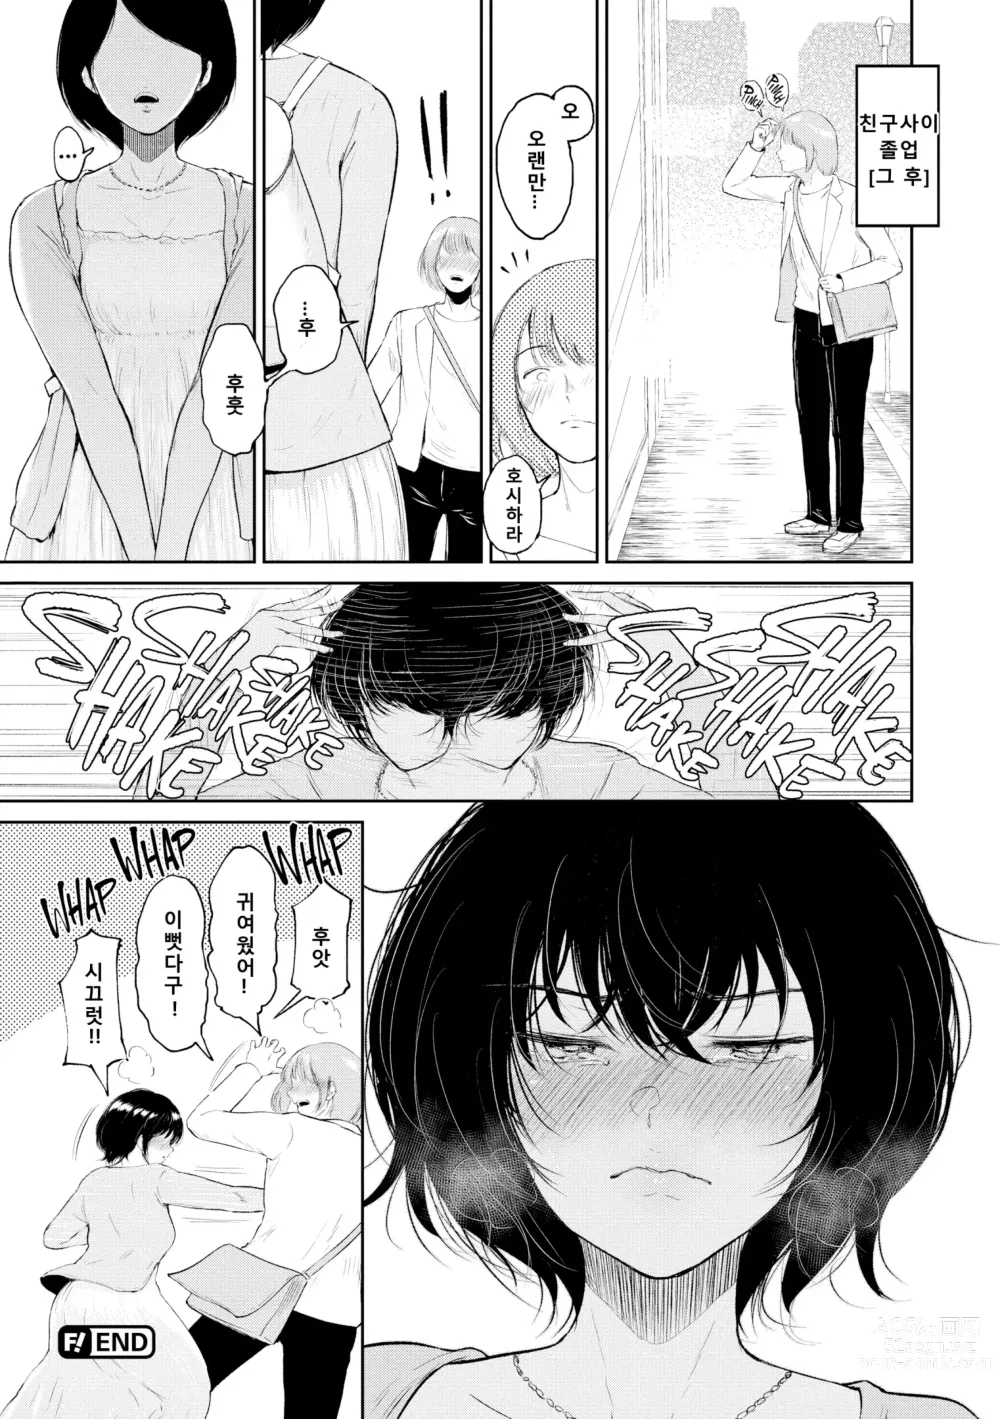 Page 188 of manga Joukou no Hibi